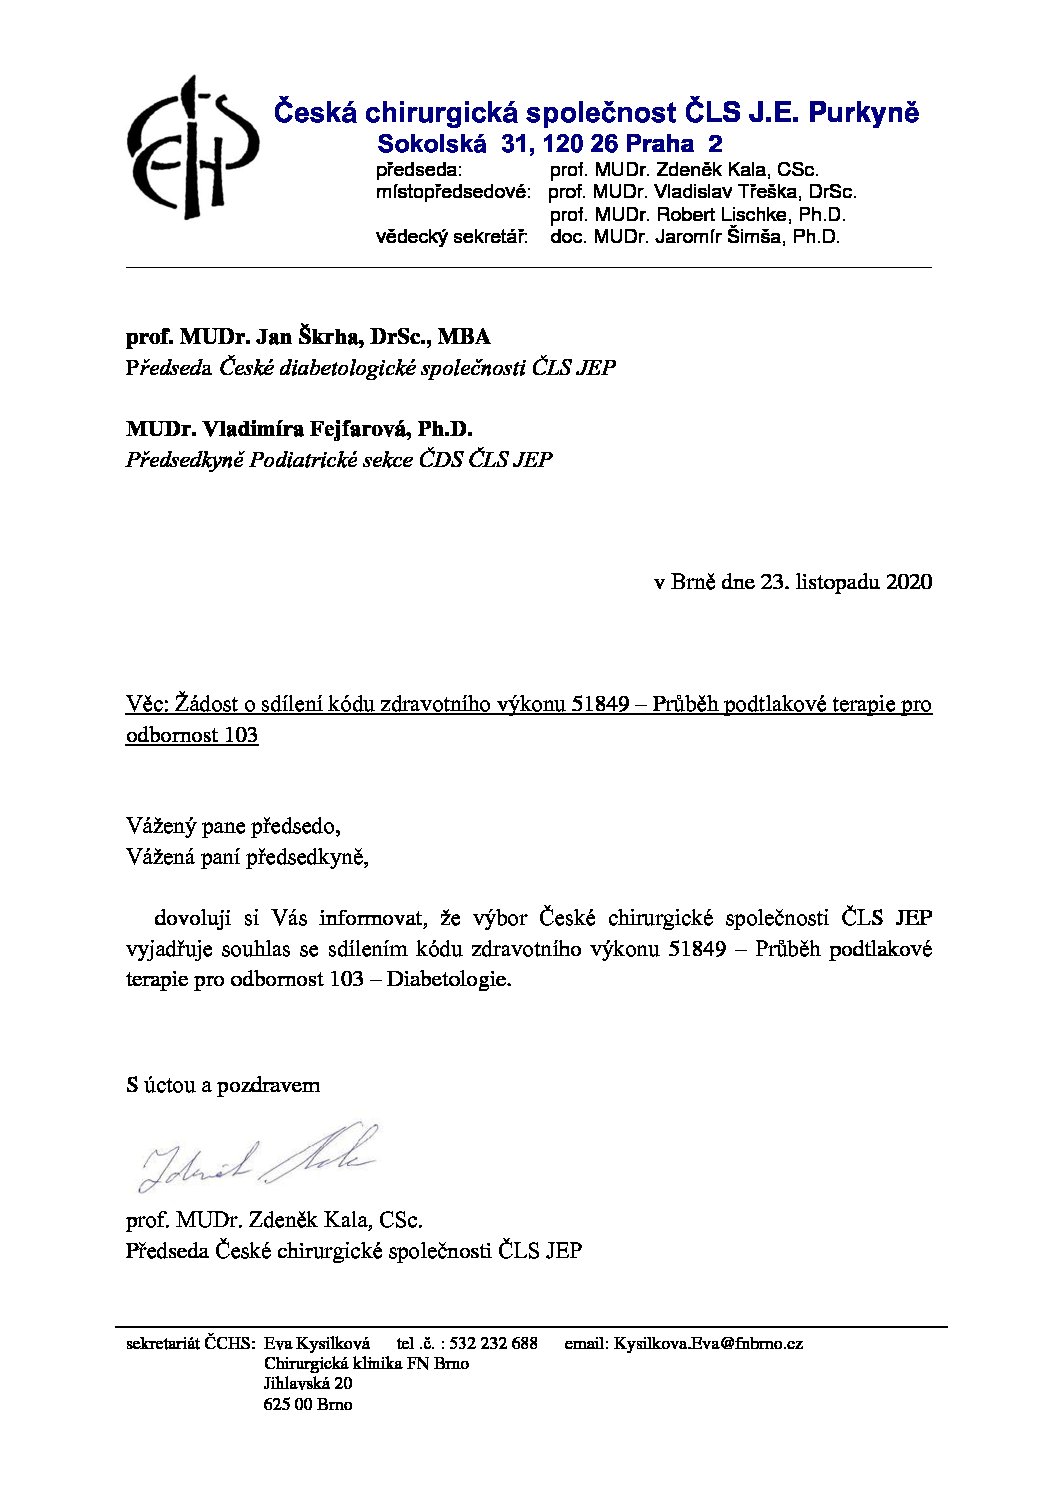 Stanovisko výboru ČCHS ČLS JEP – Sdílení výkonu 51849: průběh podtlakové terapie (23. 11. 2020)